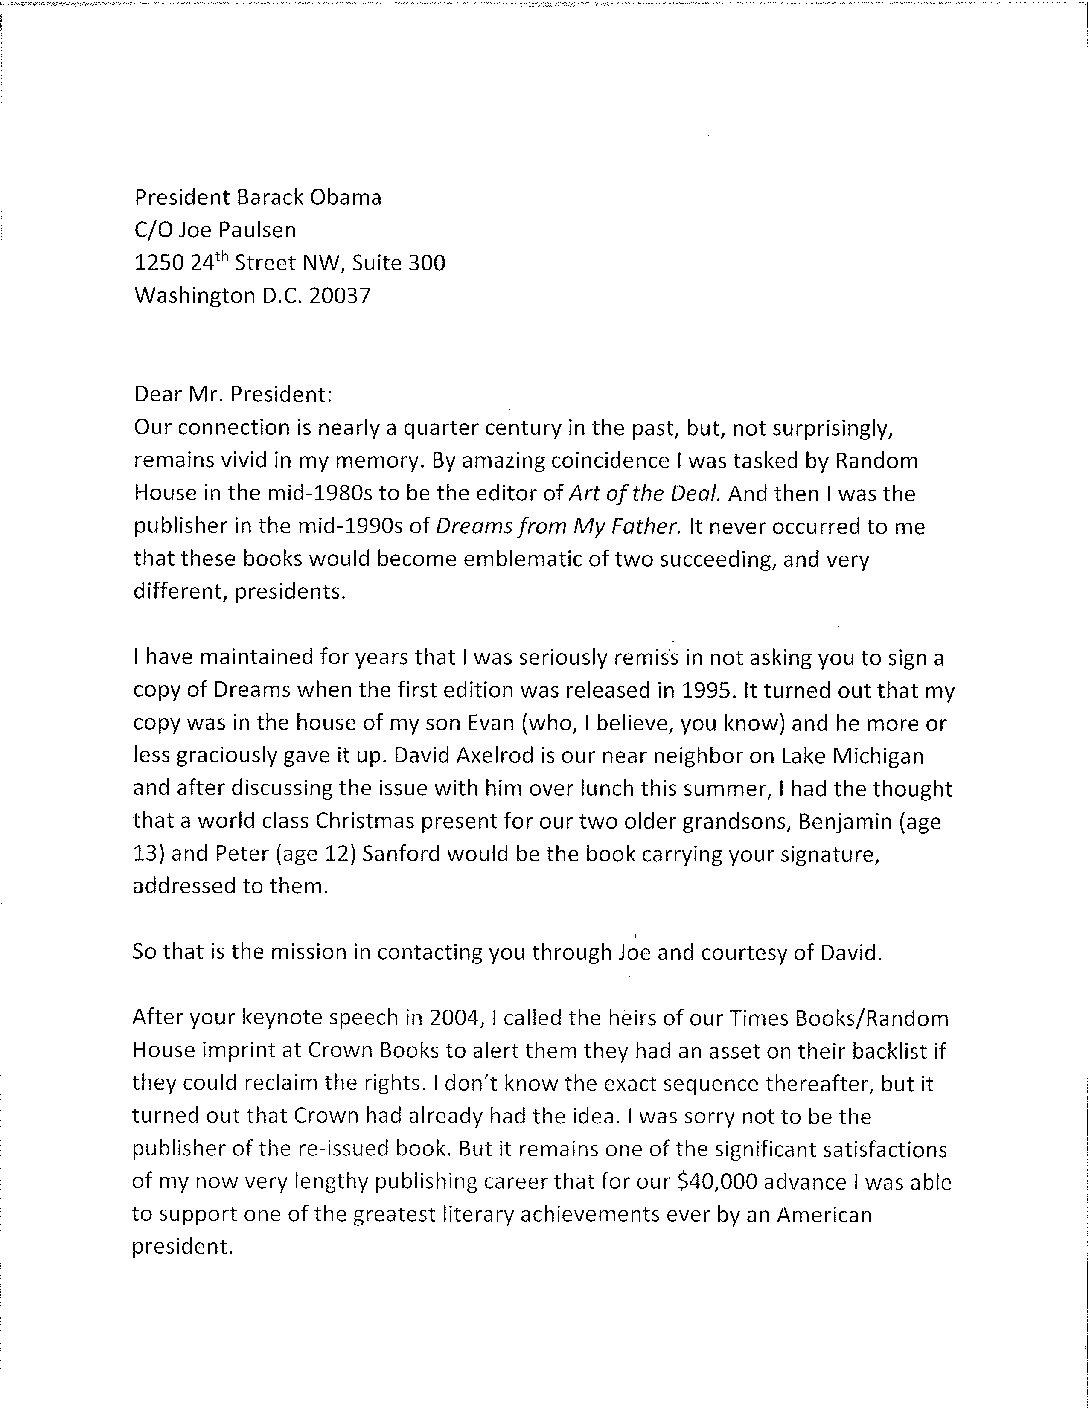 Letter to Barack Obama